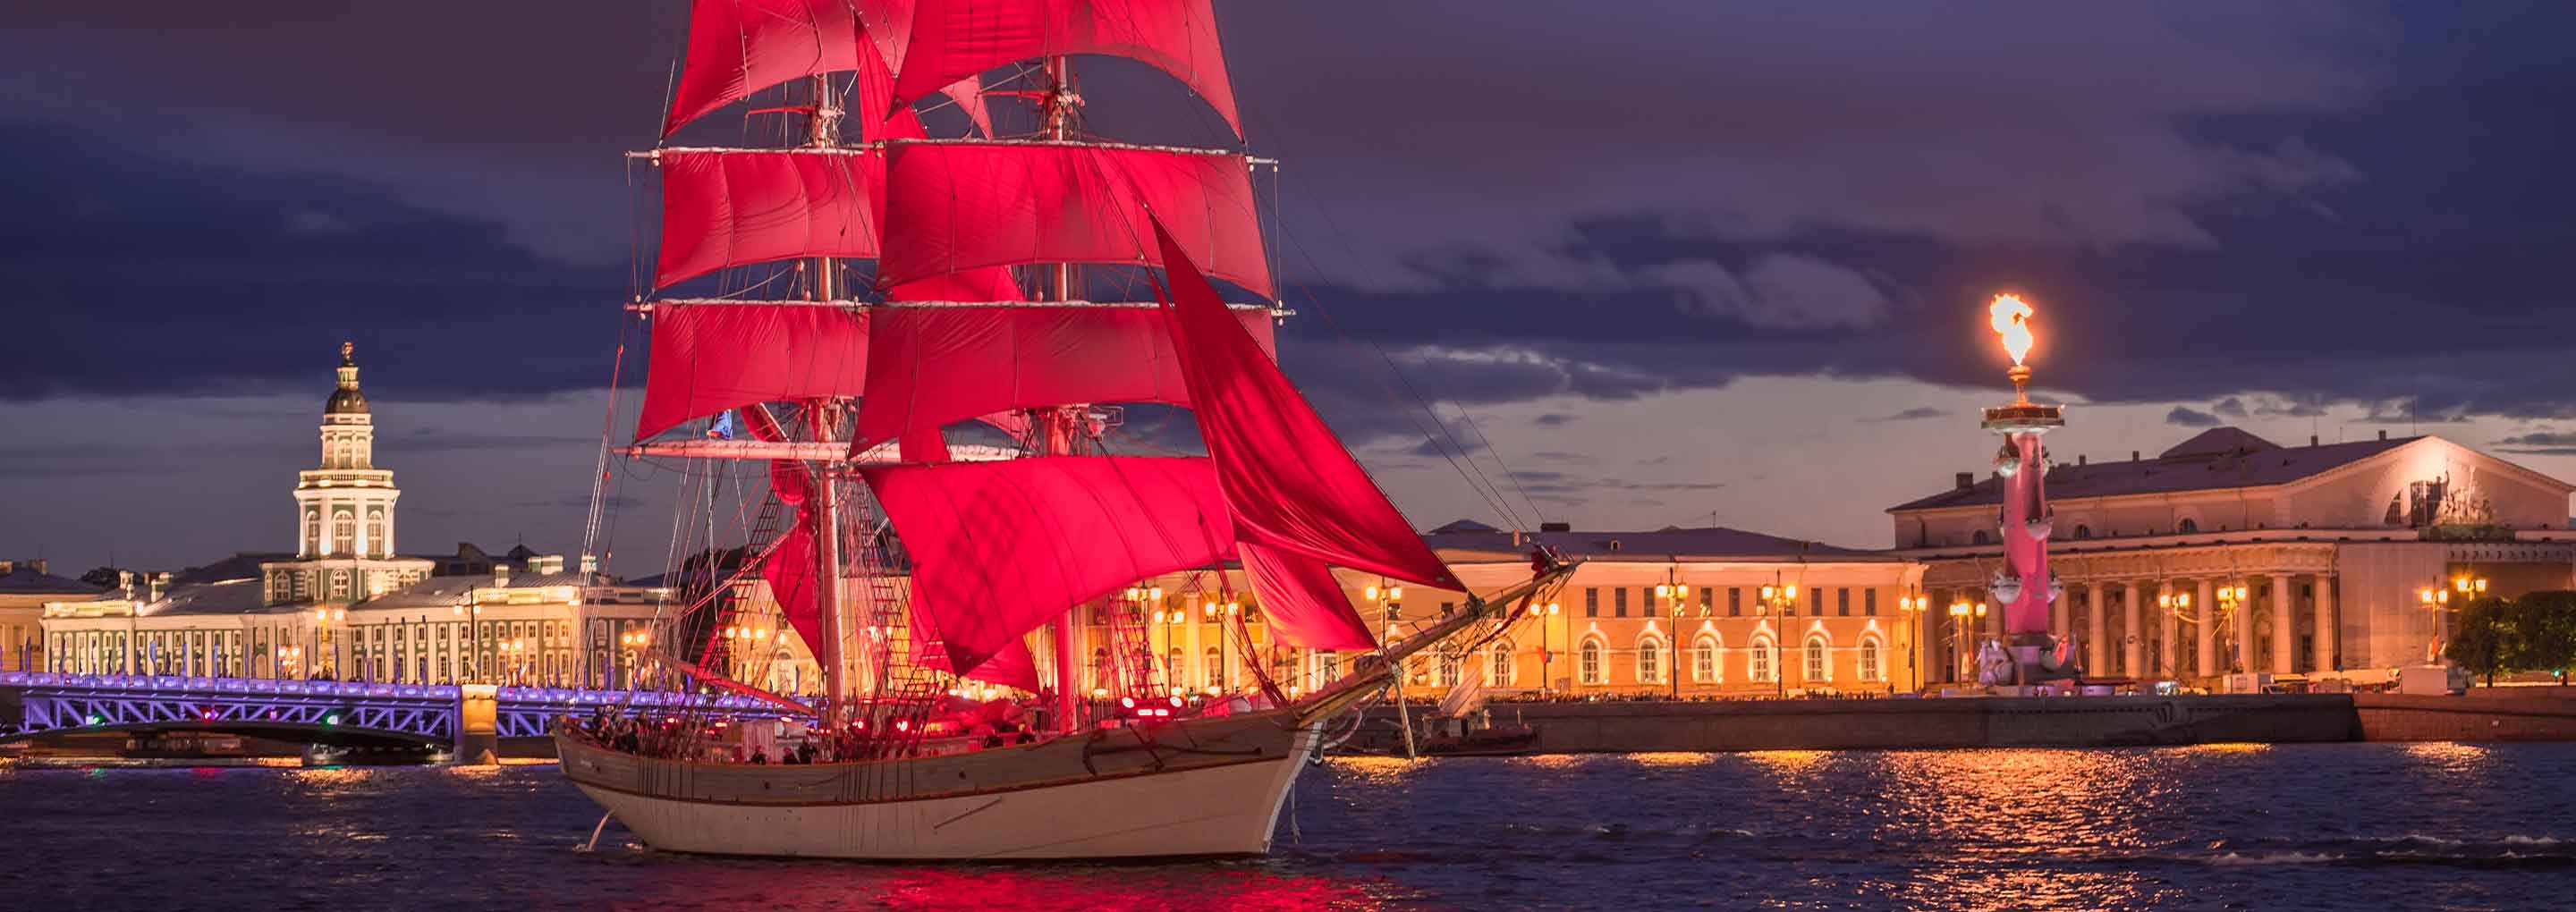 Scarlet Sails festival in Saint Petersburg.